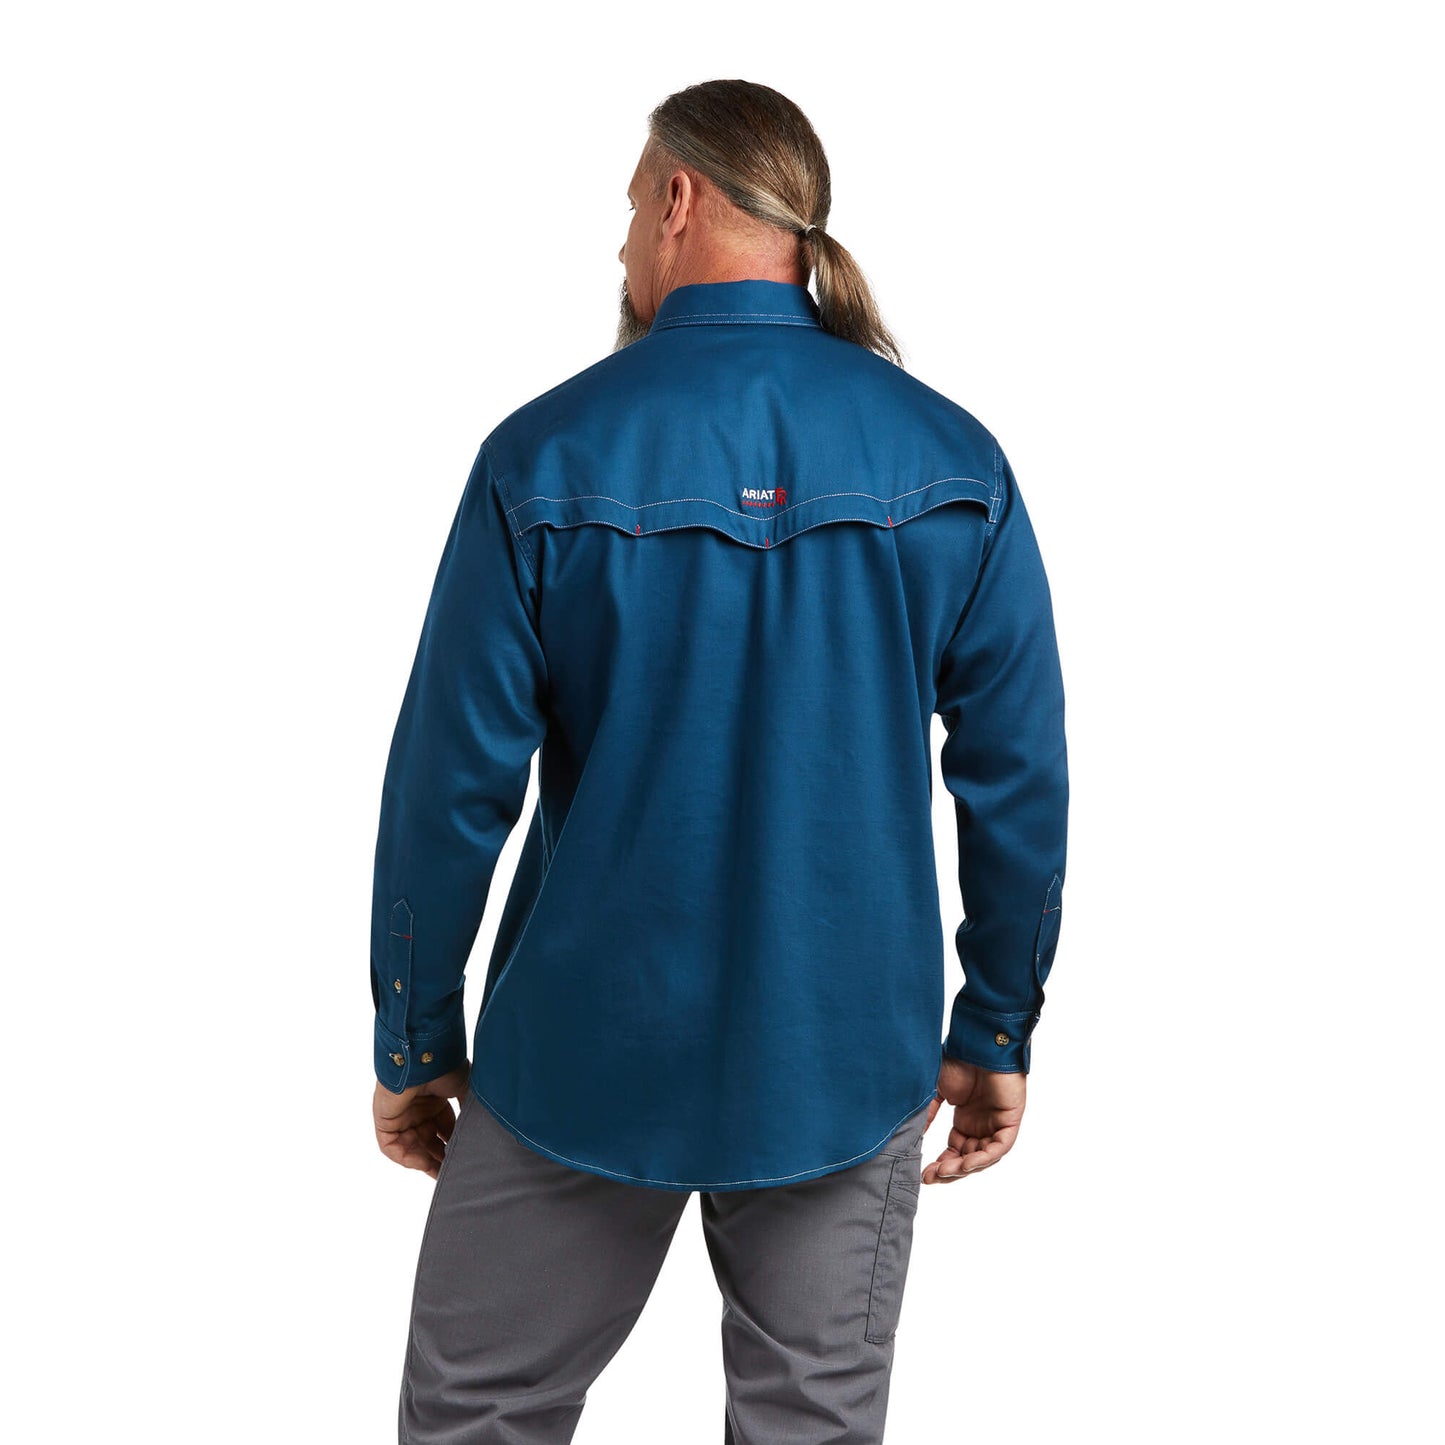 Ariat® Men's FR Vented Skyfall Blue Button Down Work Shirt 10039428